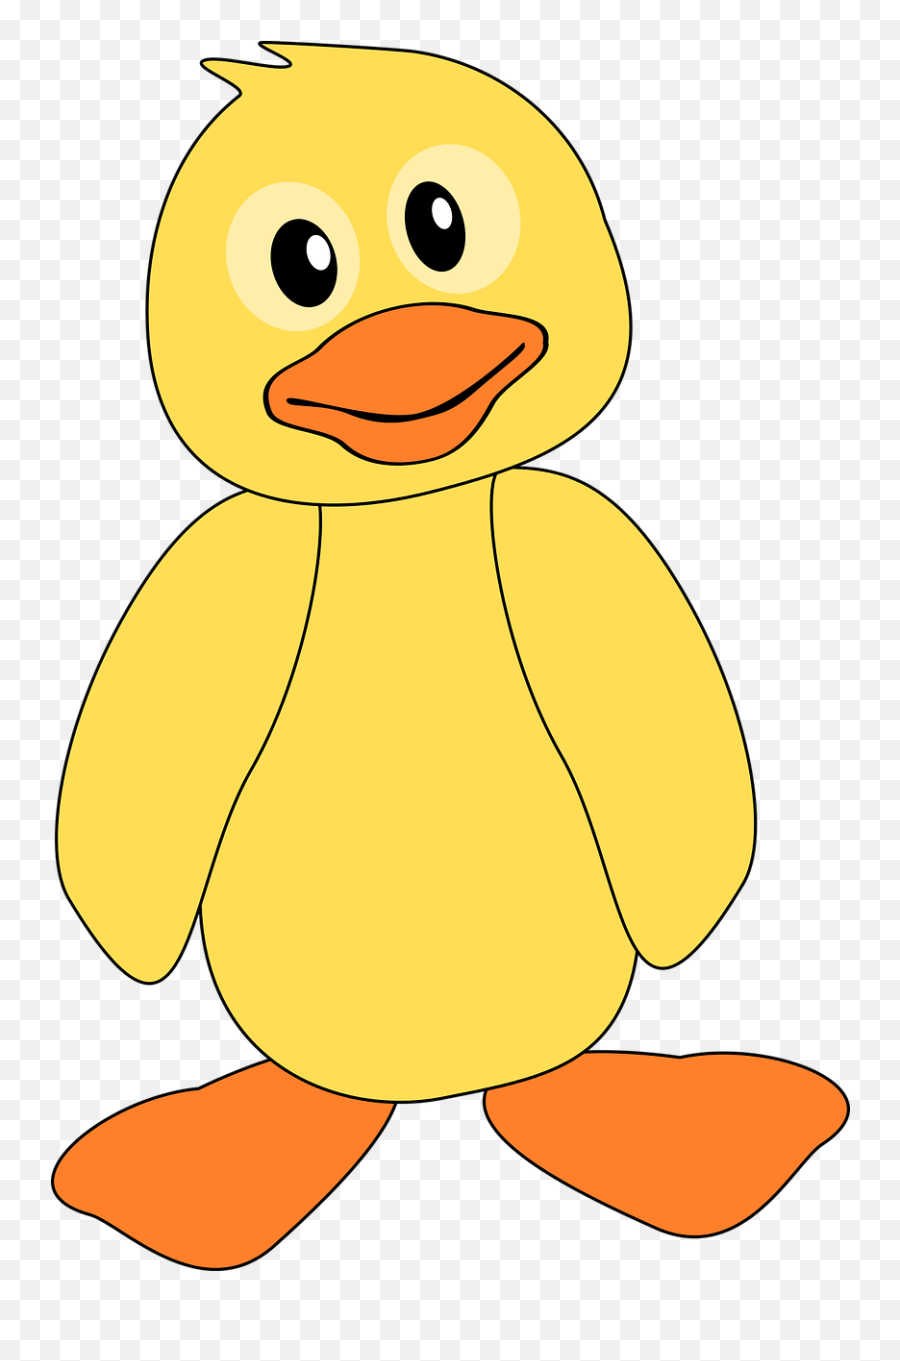 Duck Duckling Yellow - Free Vector Graphic On Pixabay Hình Nh Con Vt Hot Hình Emoji,Yellow Png